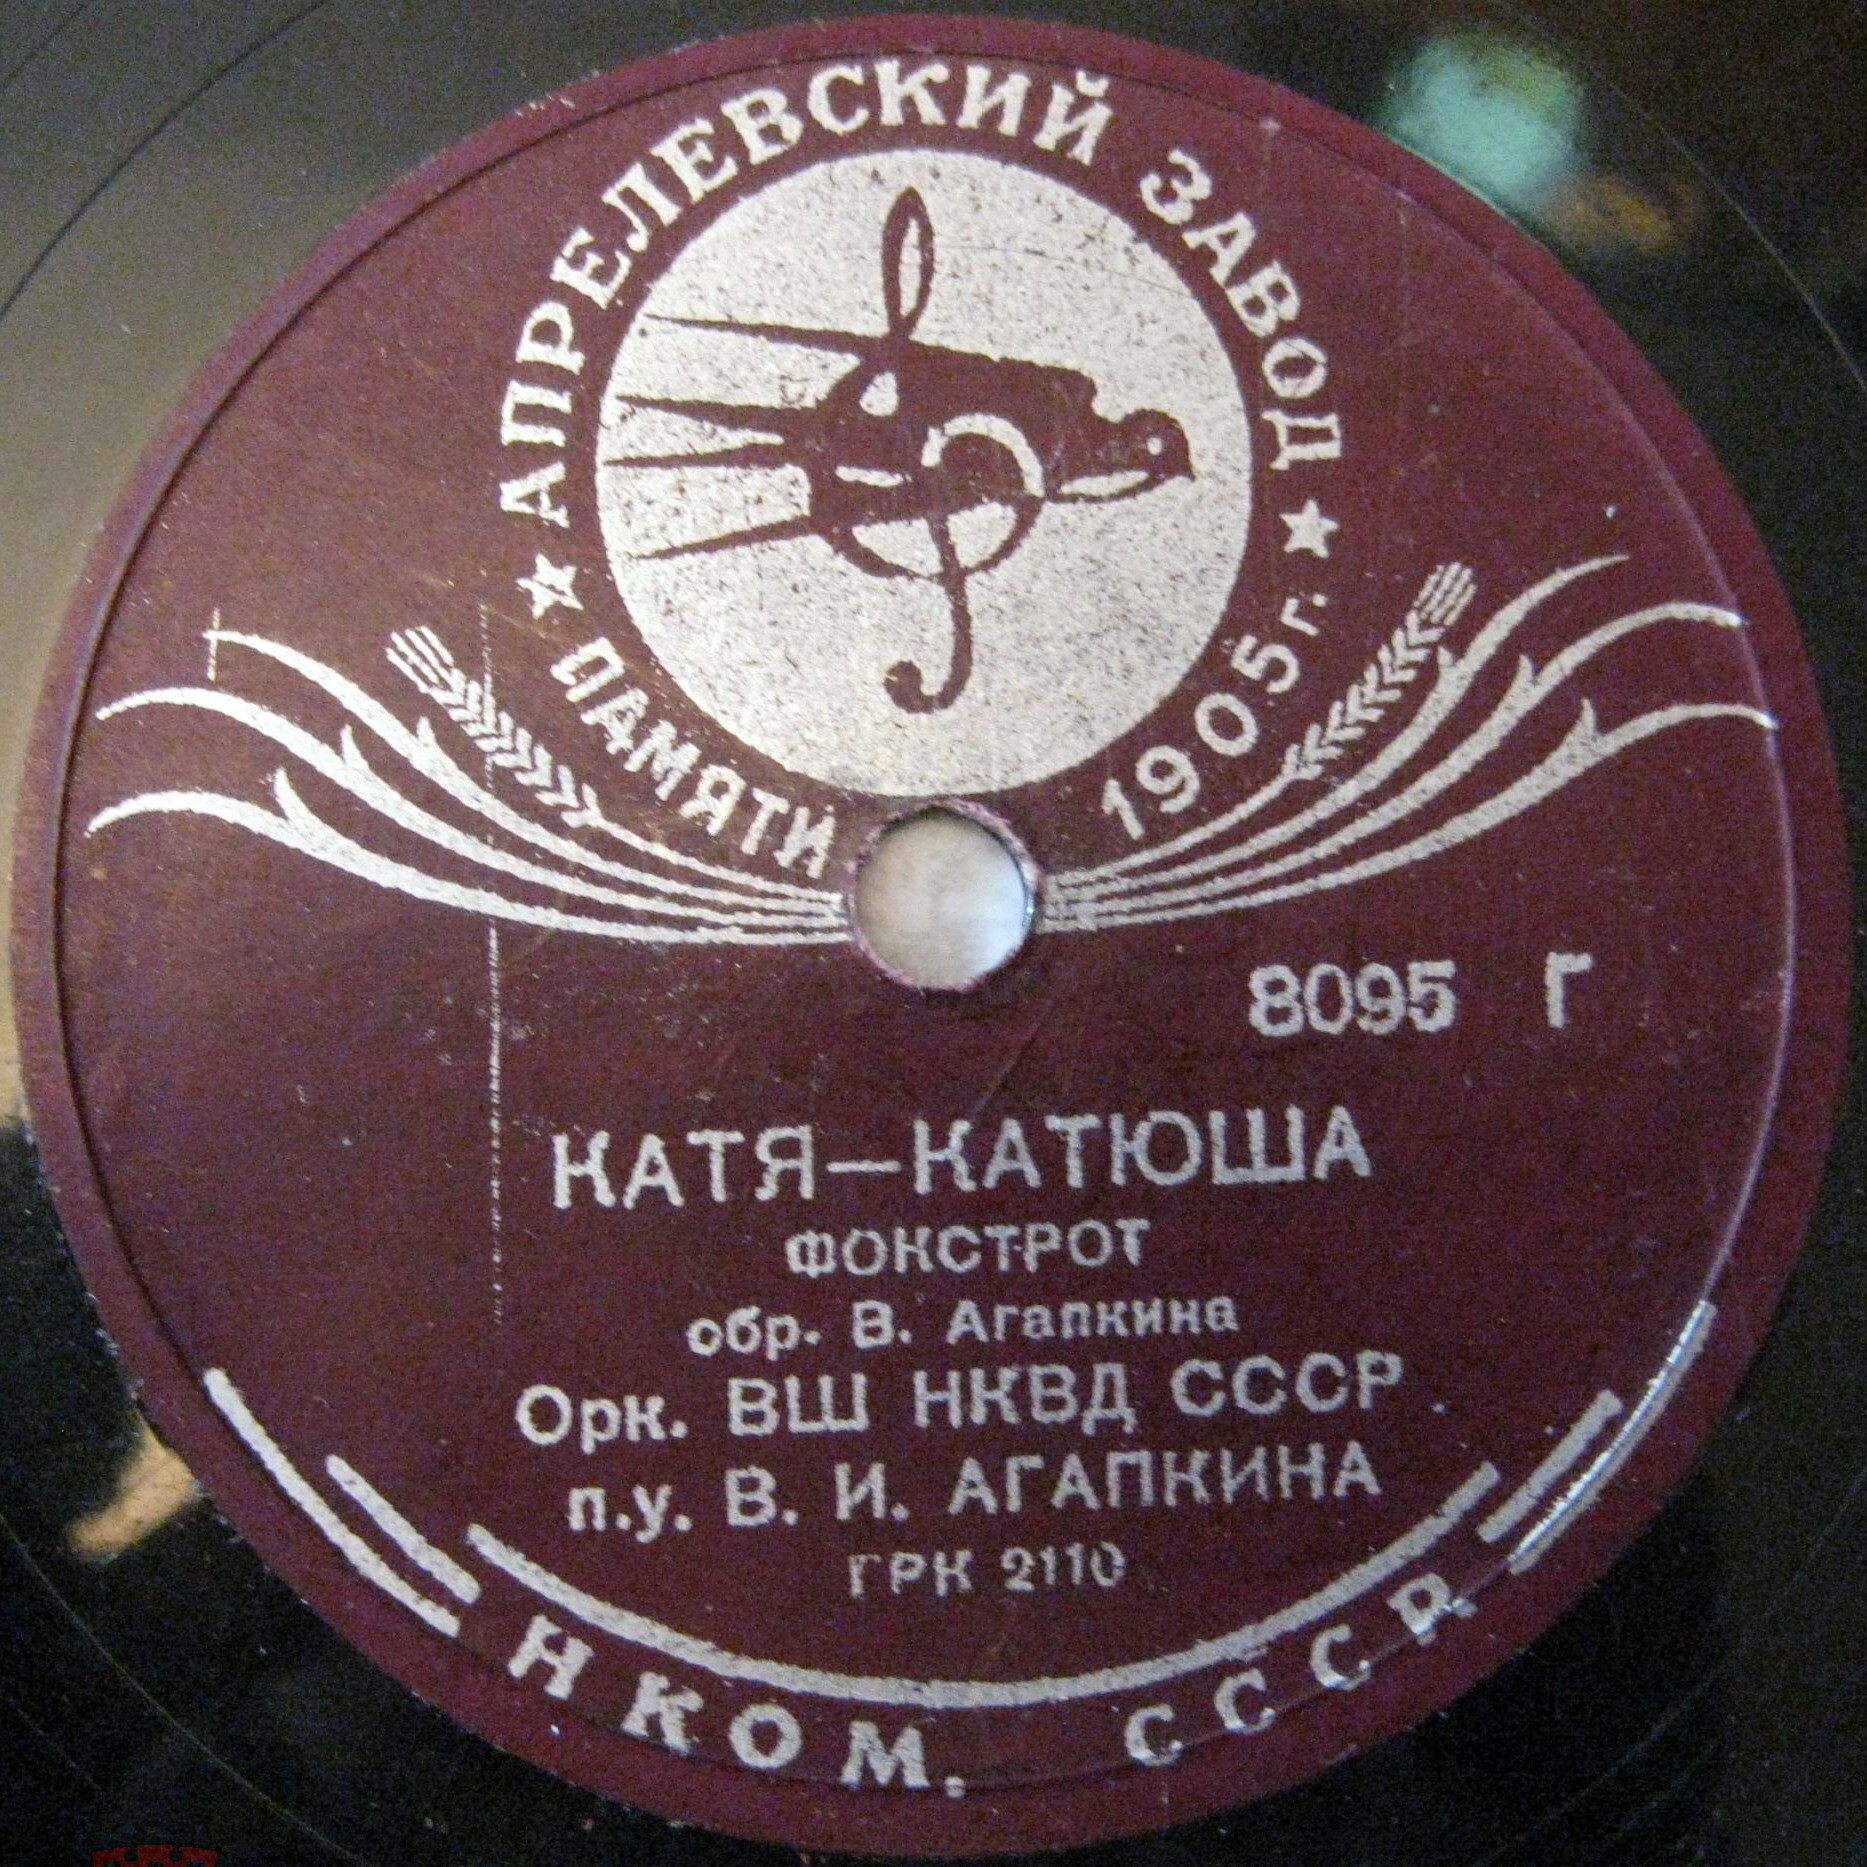 Оркестр Центральной школы НКВД - Катя-Катюша / Мой друг